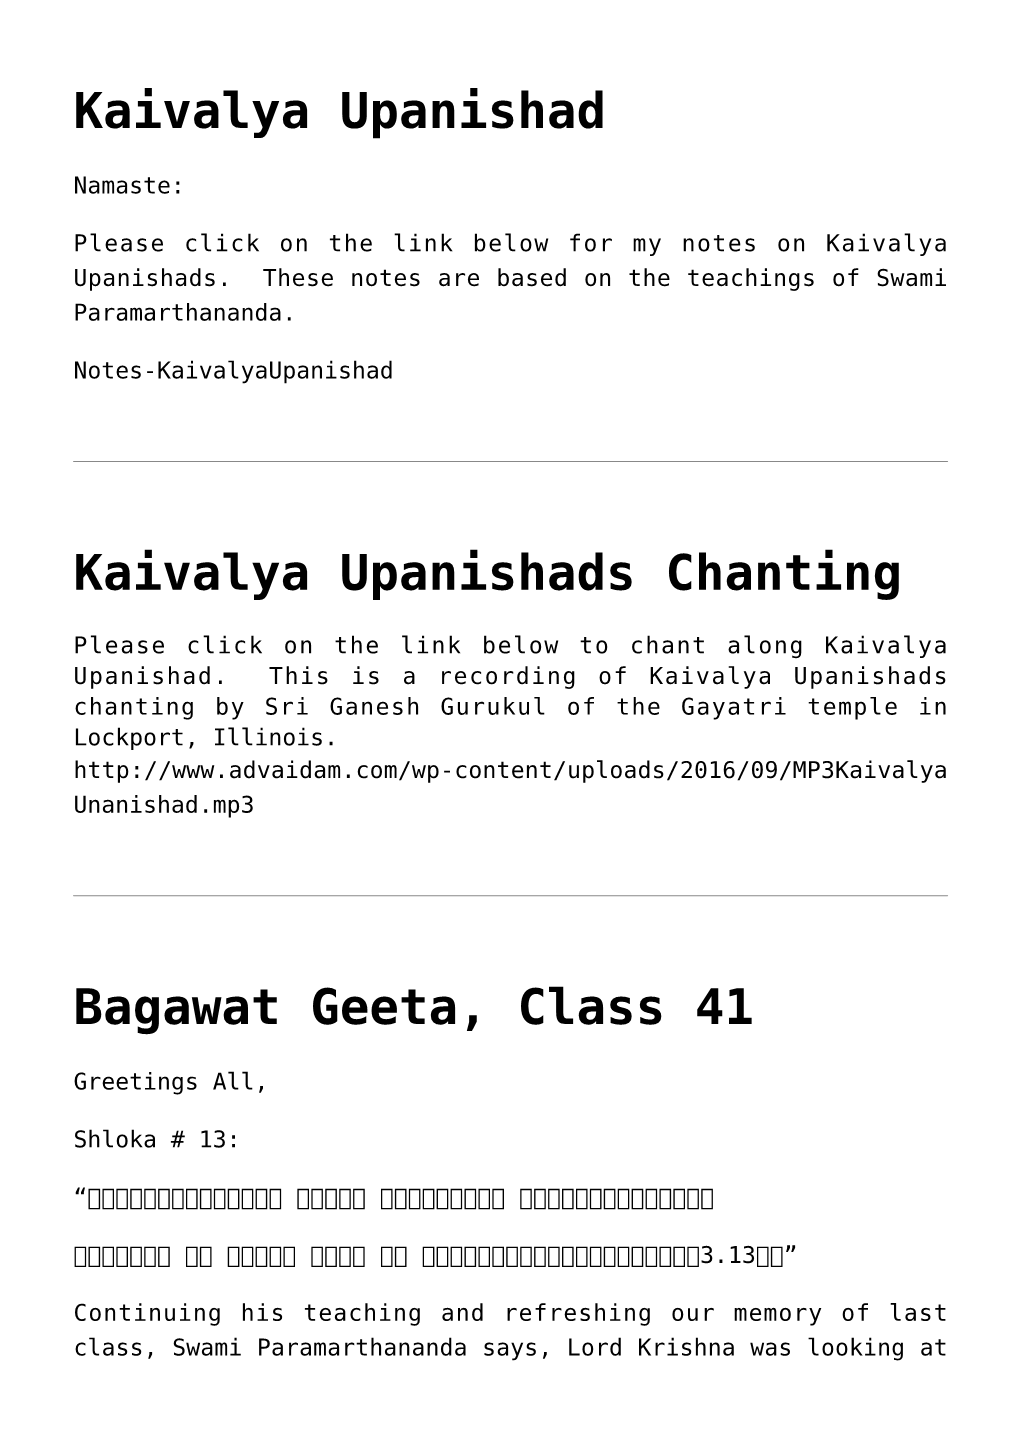 Kaivalya Upanishad,Kaivalya Upanishads Chanting,Bagawat